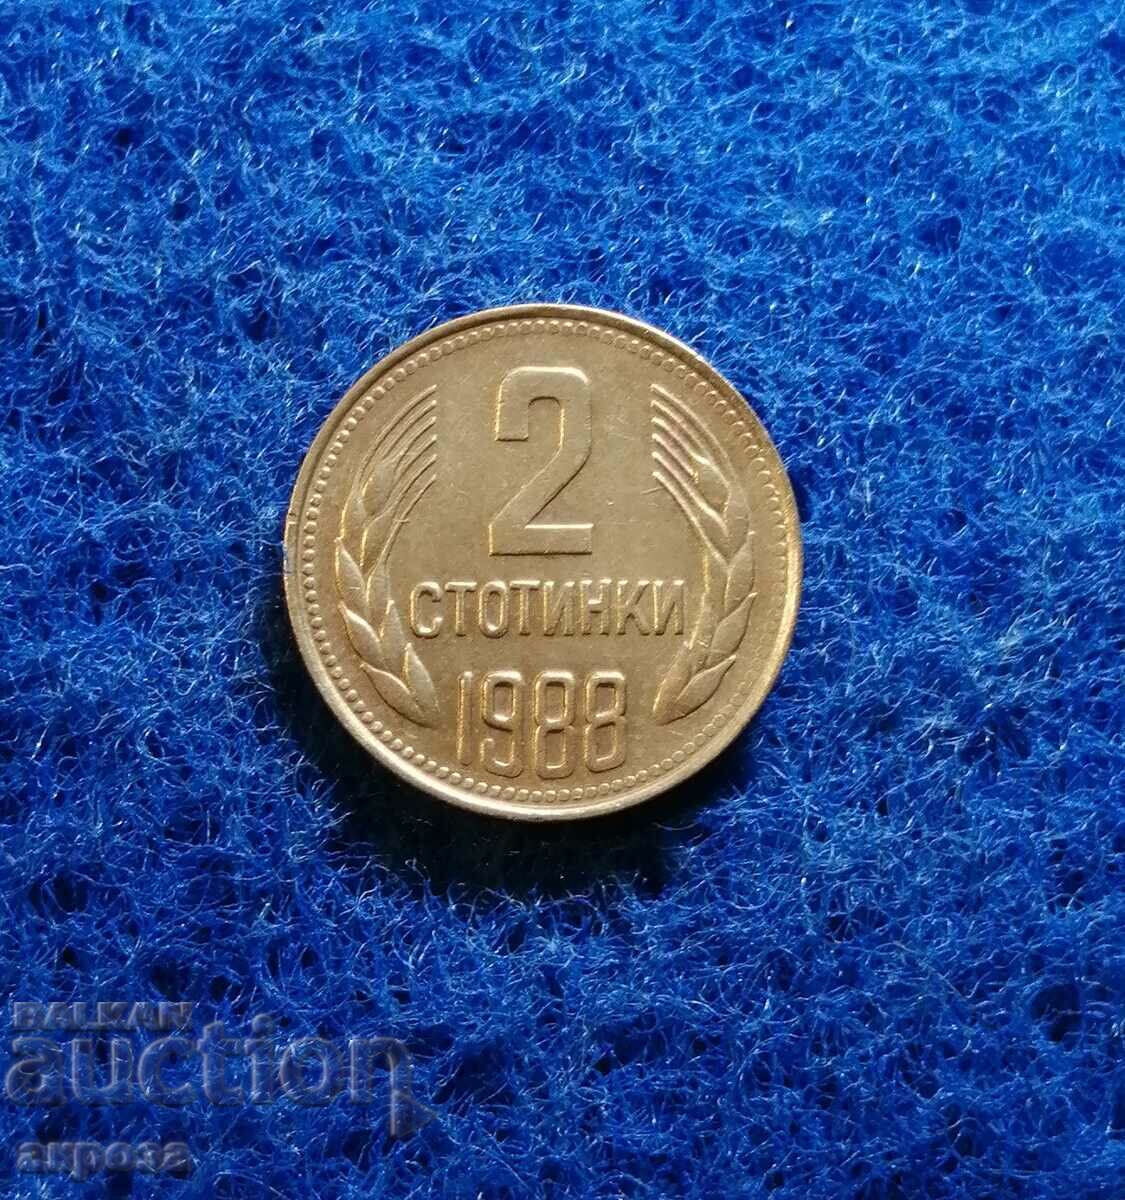 2 σεντς 1988